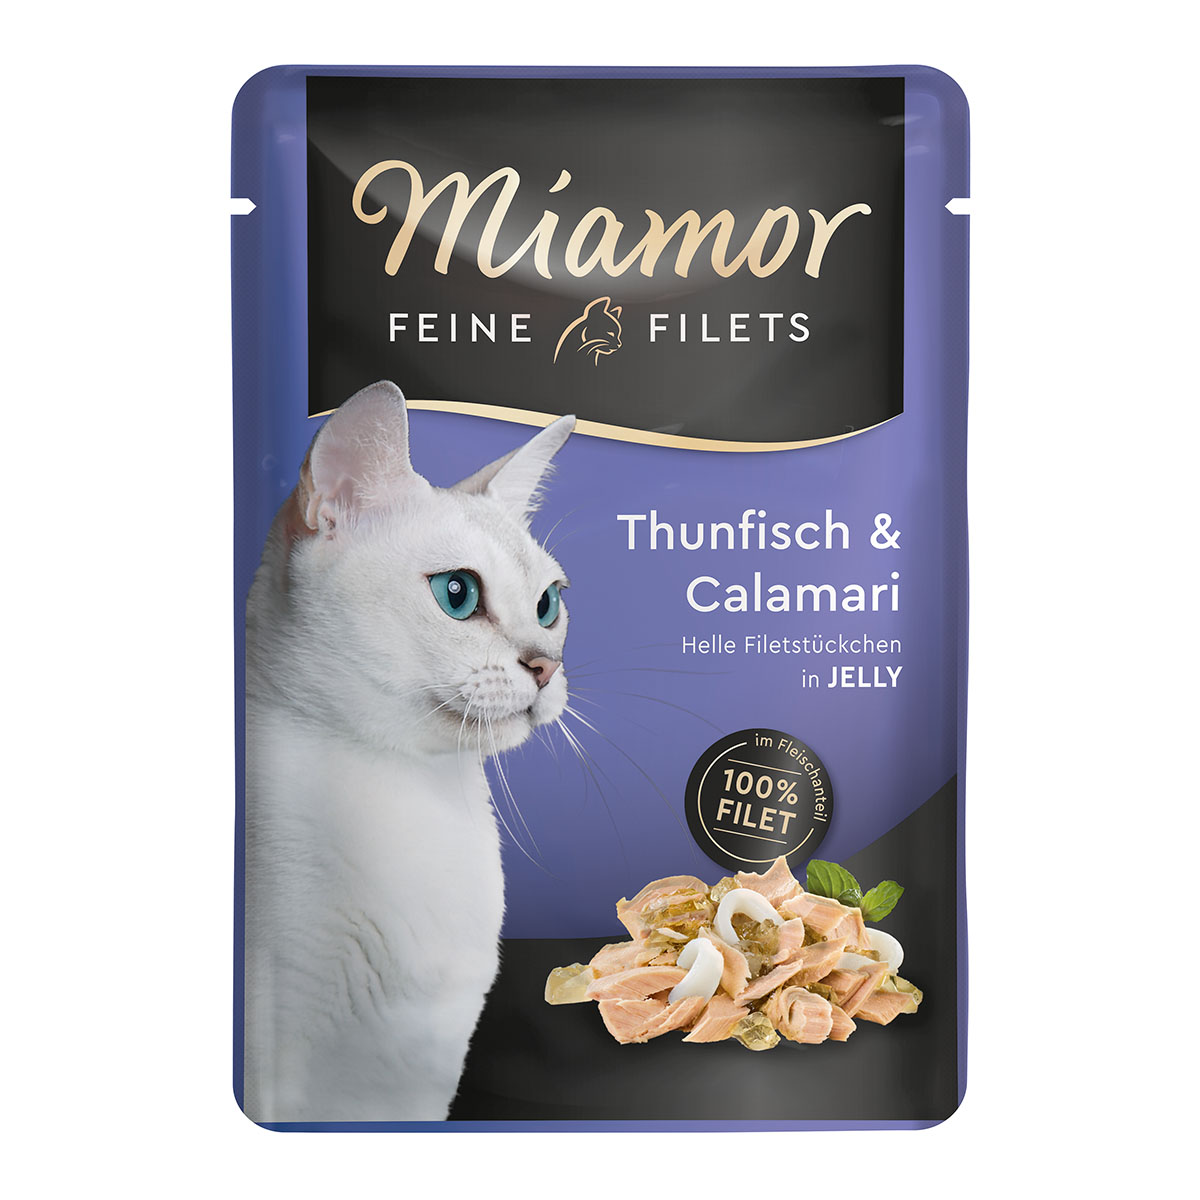 miamor feine filets thunfisch und calamari 100g